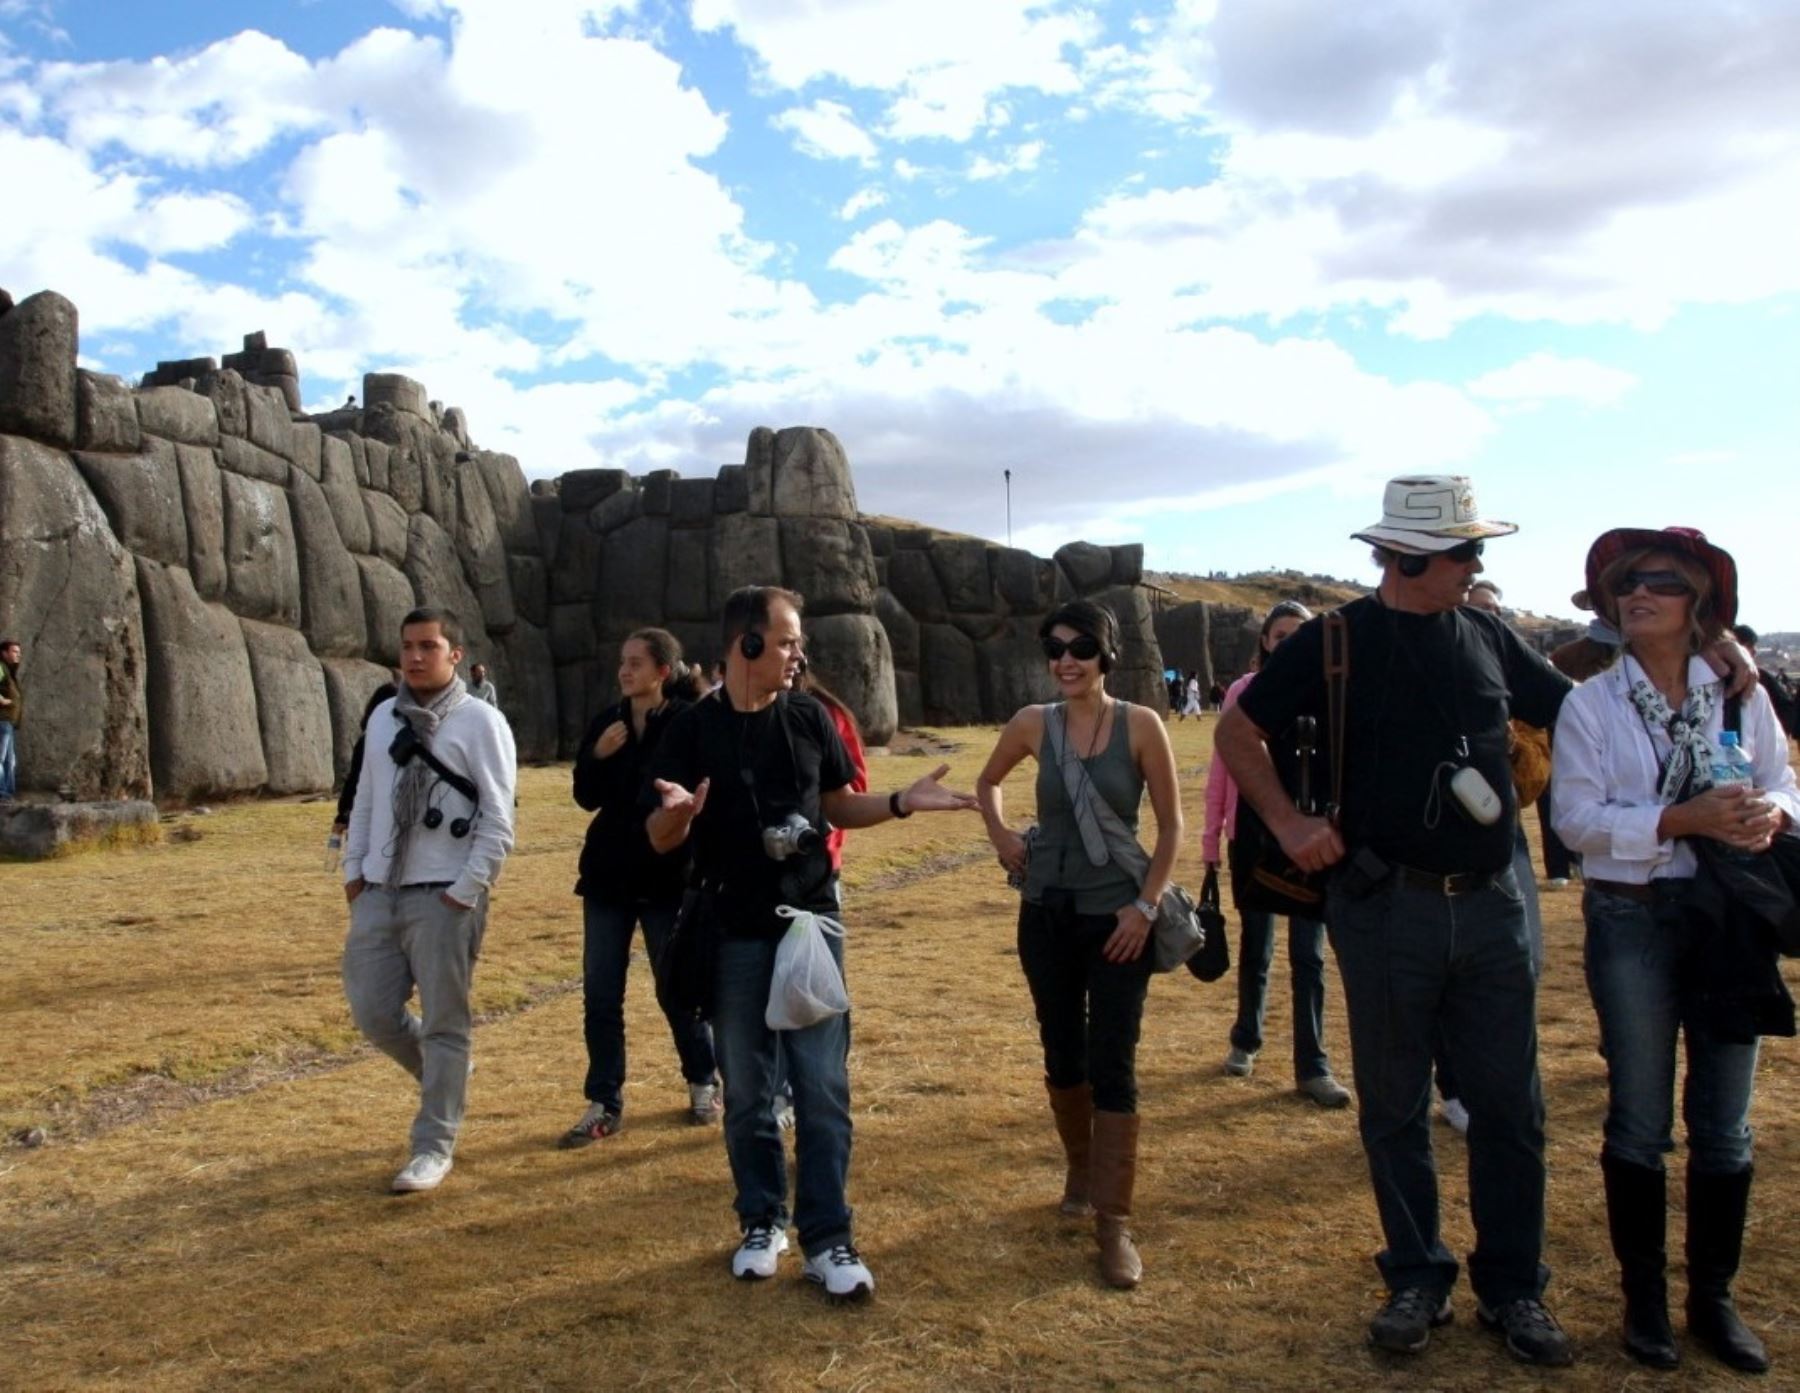 Cusco lanza campaña turística "2x1" para incentivar visitas de turistas a sus emblemáticos parques arqueológicos.